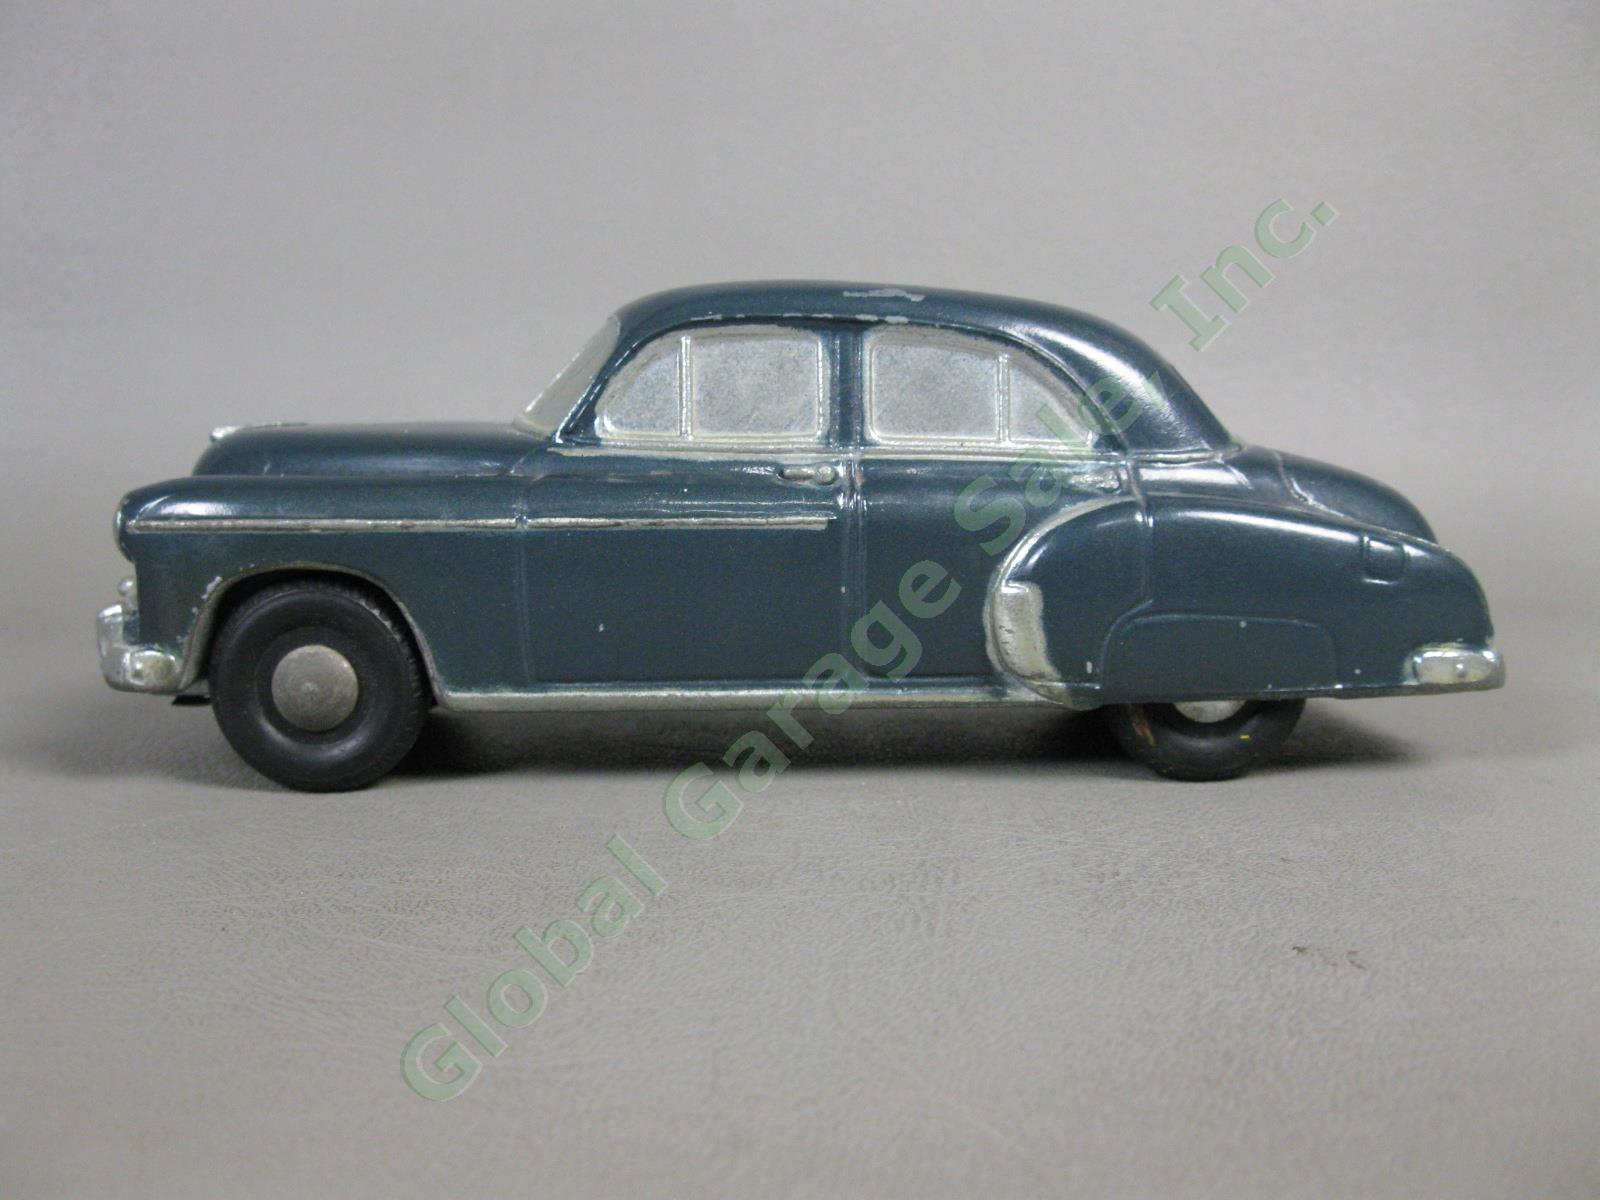 1950 Chevrolet Styleline DeLuxe Windsor Blue Sedan Banthrico Dealer Promo Car NR 1